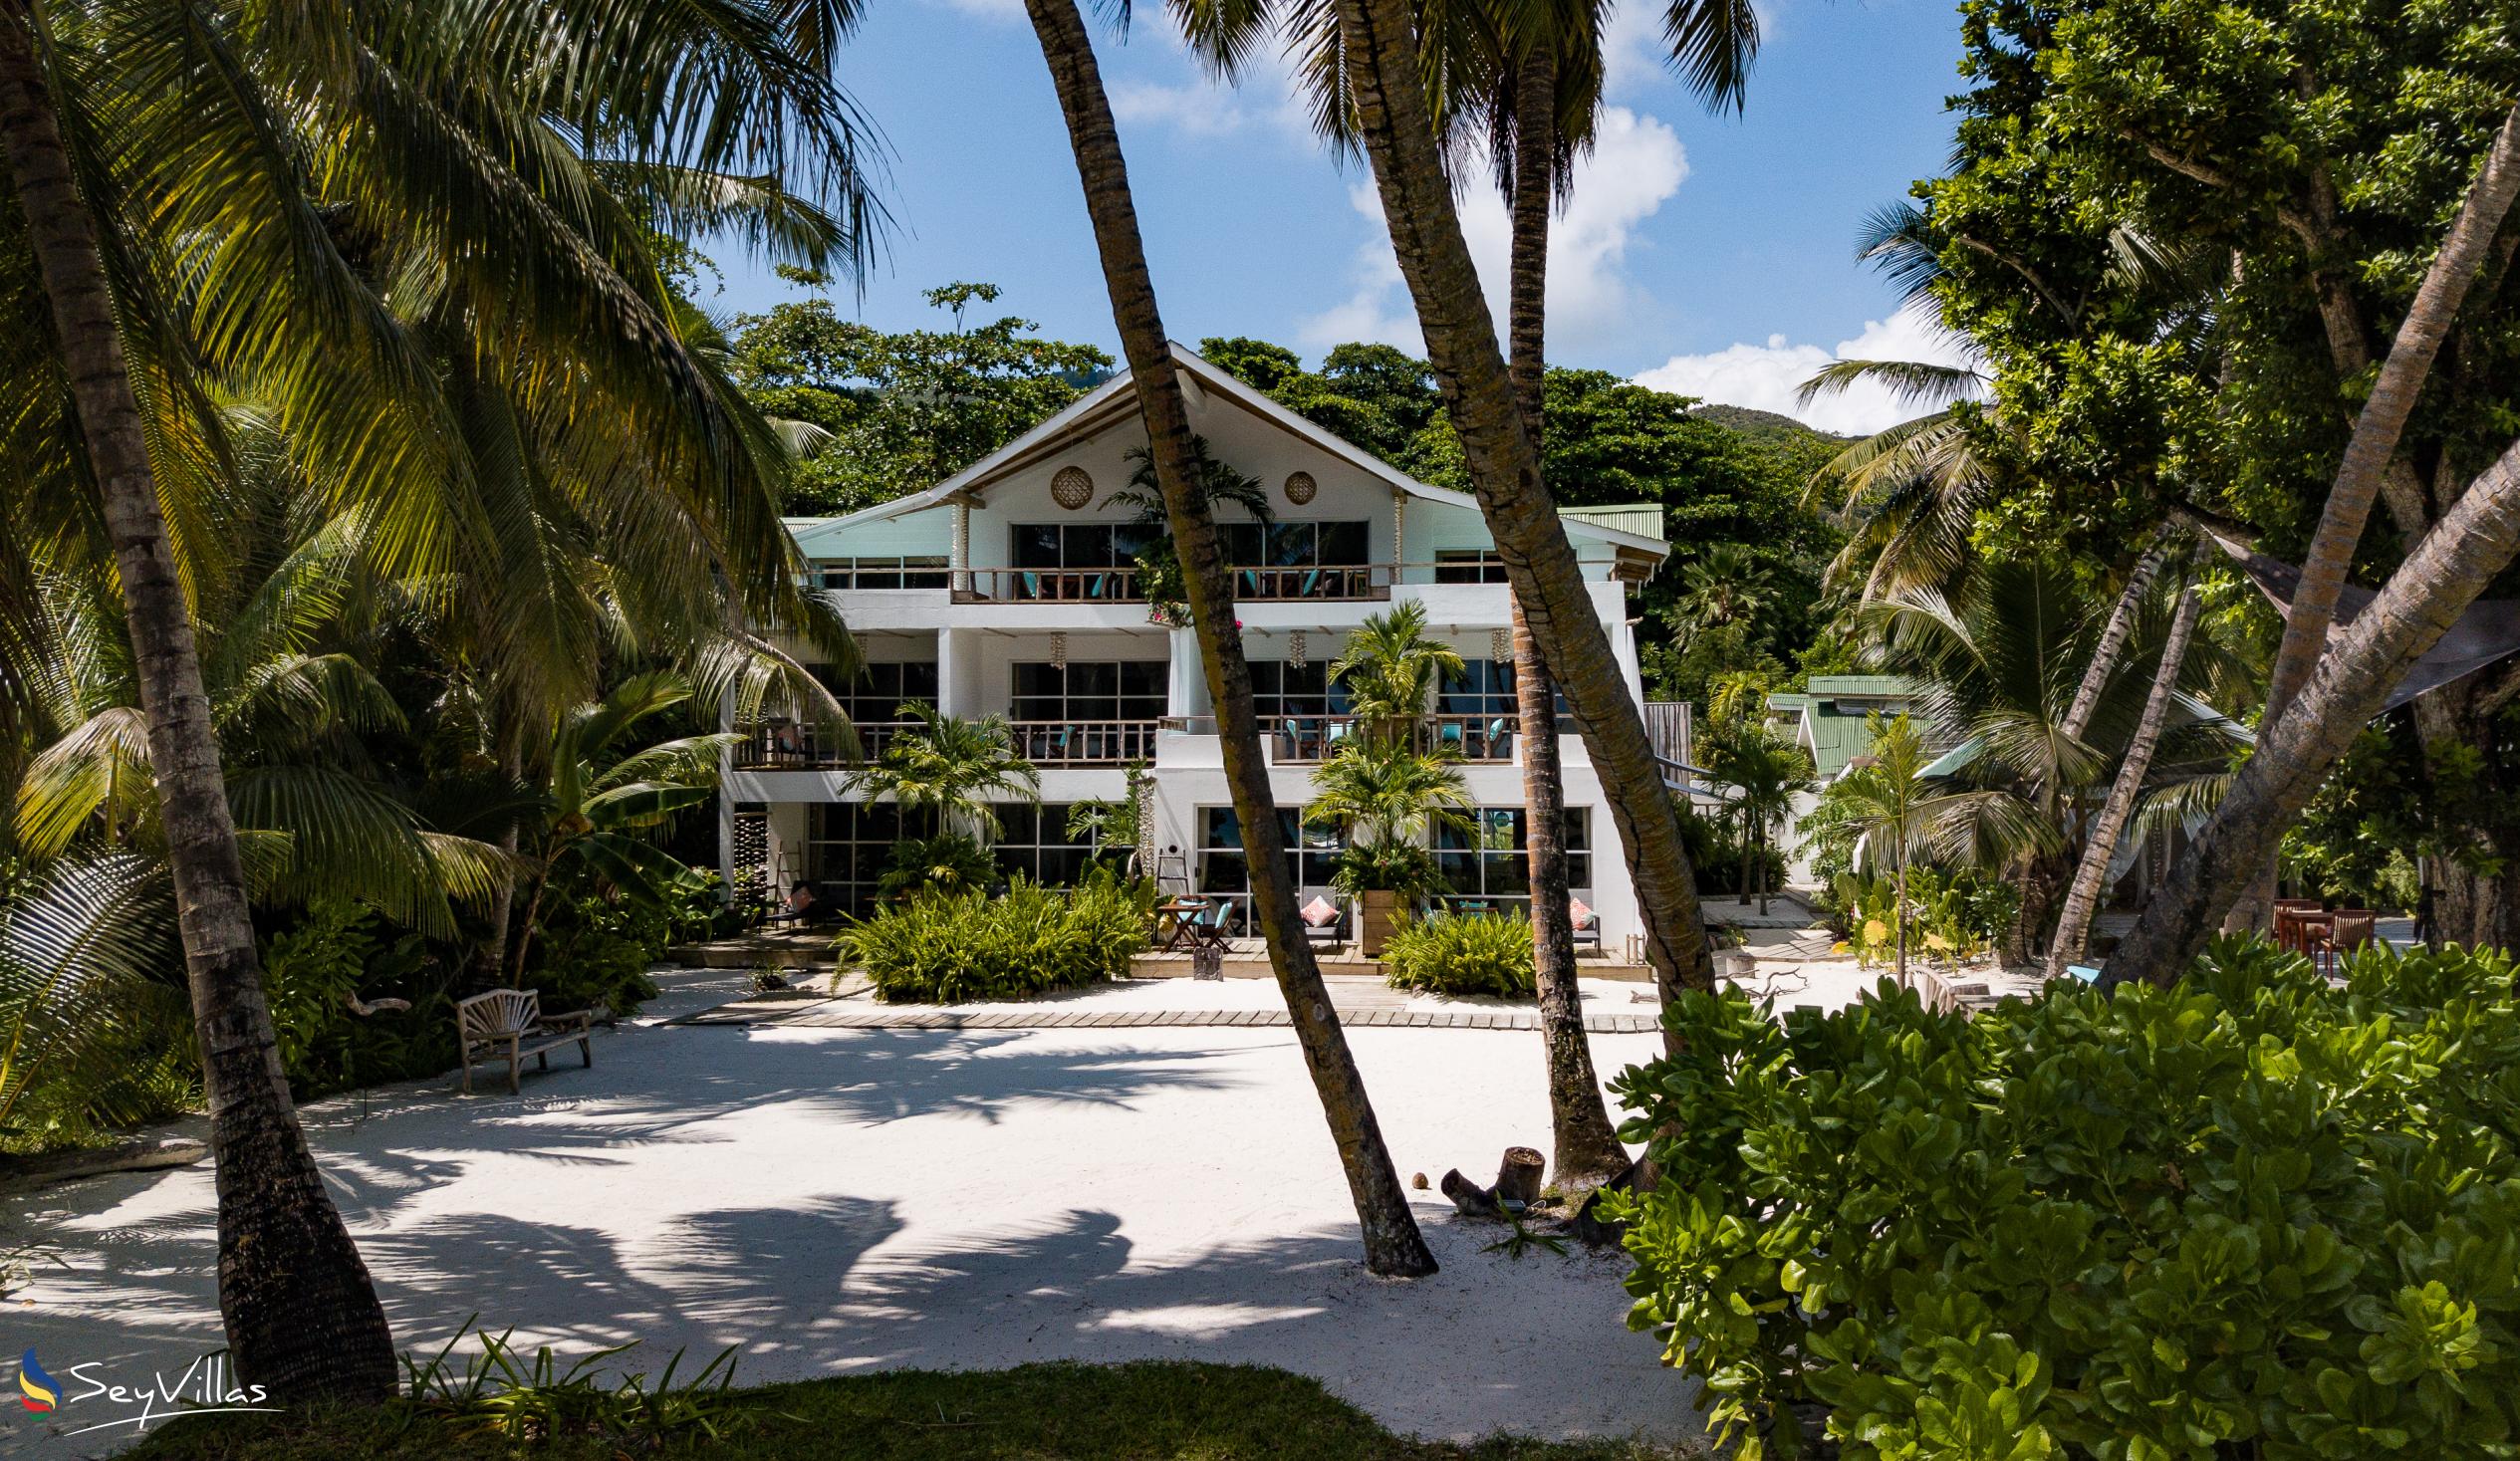 Foto 97: Bliss Hotel Praslin - Beach House - Chambre Beach Supérieure - Praslin (Seychelles)